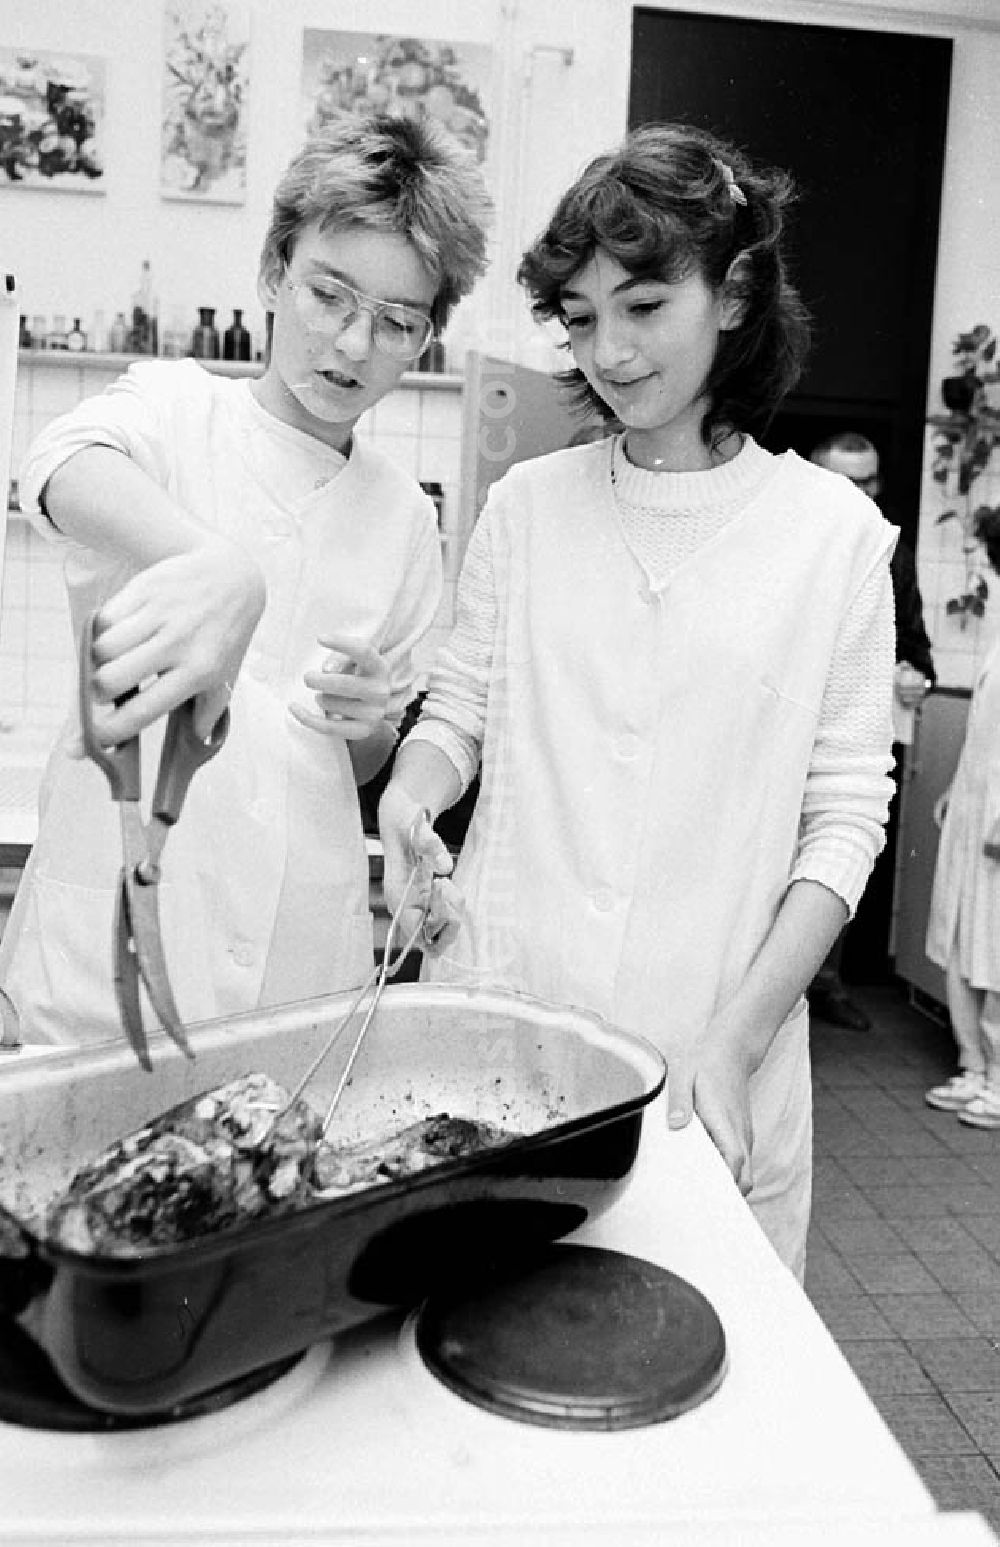 GDR image archive: Berlin - Arbeitsgemeinschaft Haushalt im Pionierpalast Ernst Thälmann in der Wuhlheide. Mädchen beim zubereiten von einem Braten.